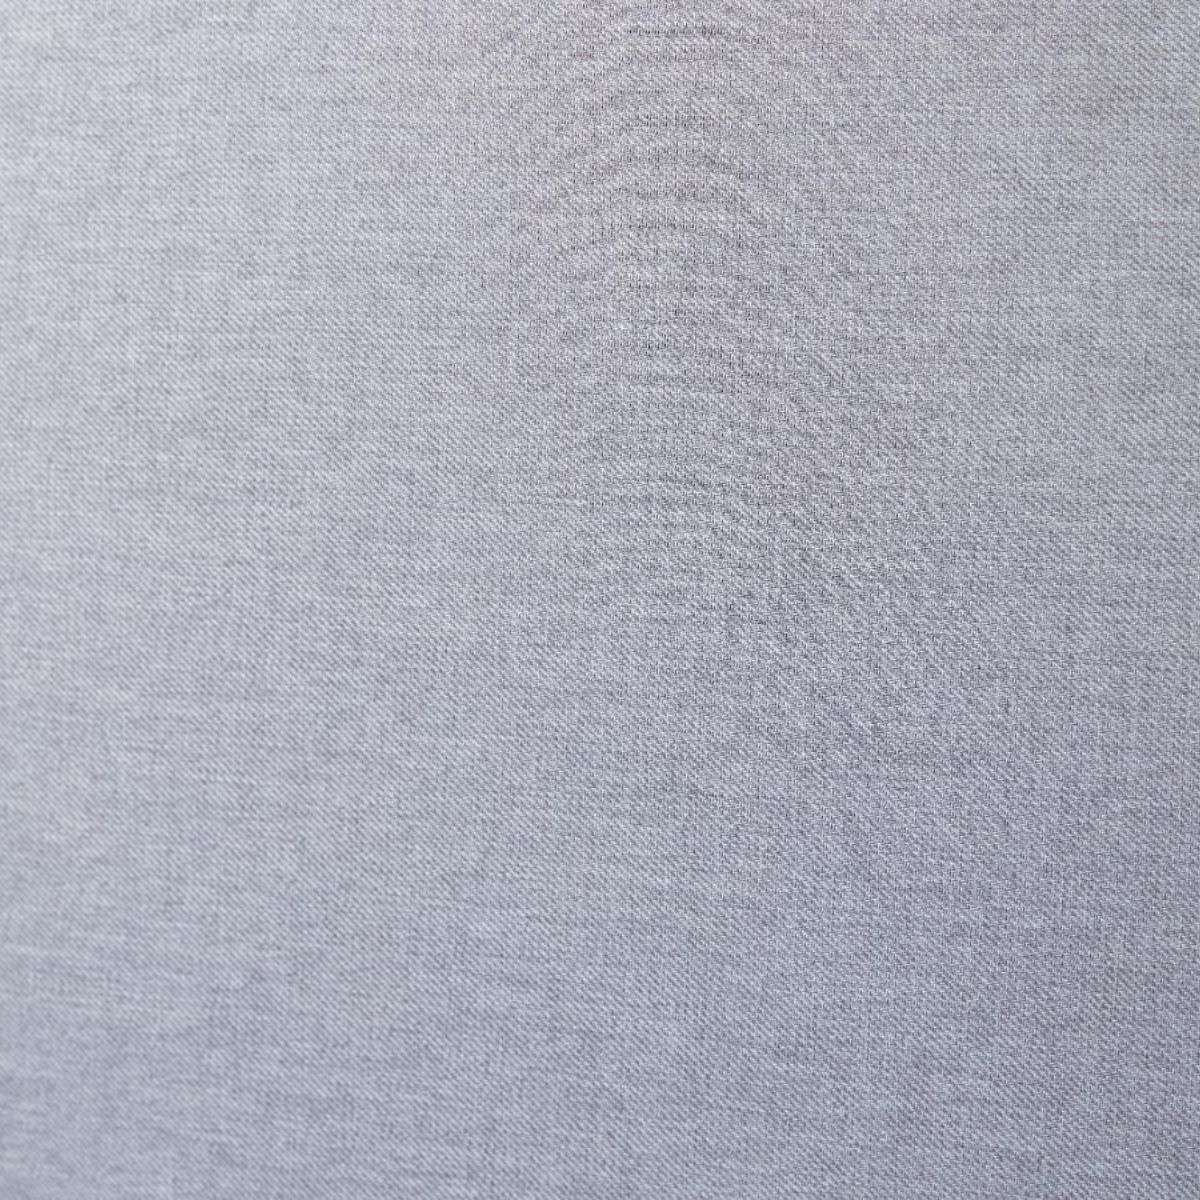 Imogen Single Bed - Light Grey